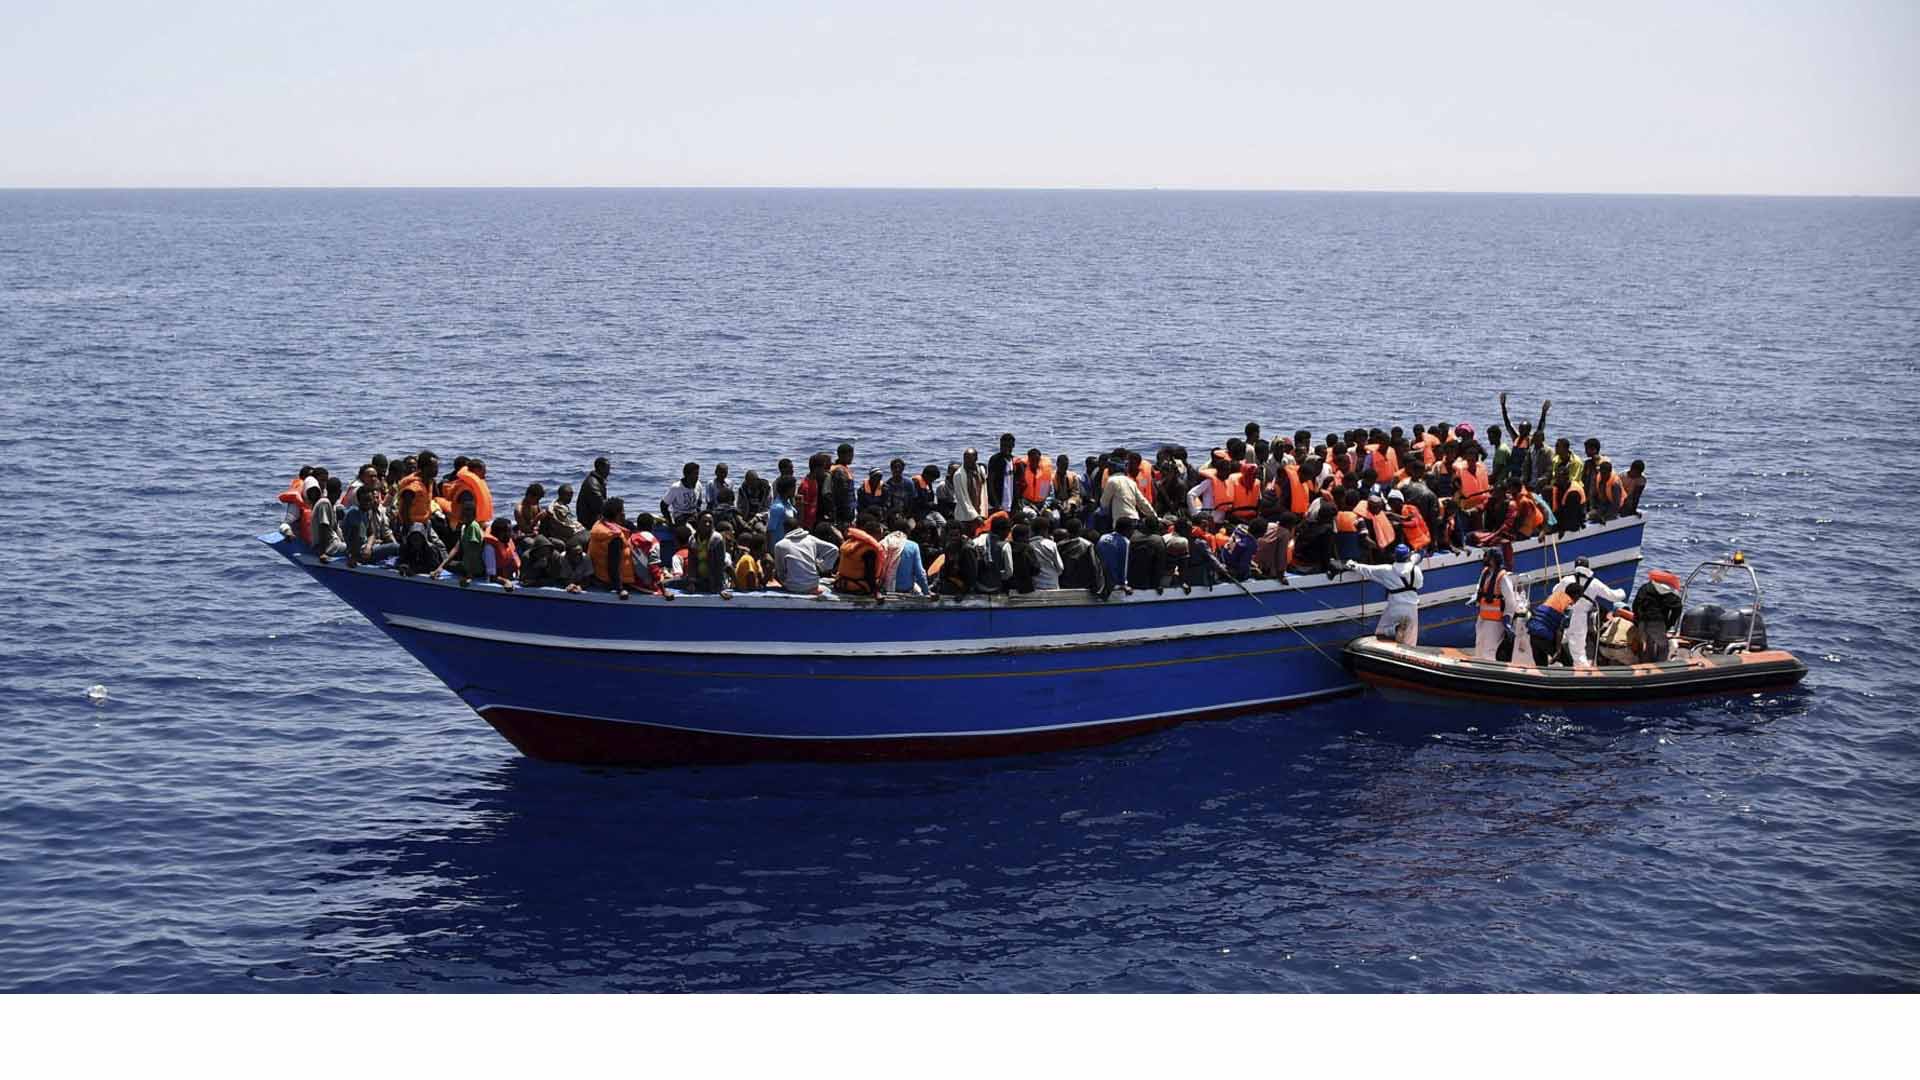 En comparación cal 2015, las estadísticas indican que el número de migrantes fallecidos por intentar llegar a otro país en embarcaciones seguirá en ascenso